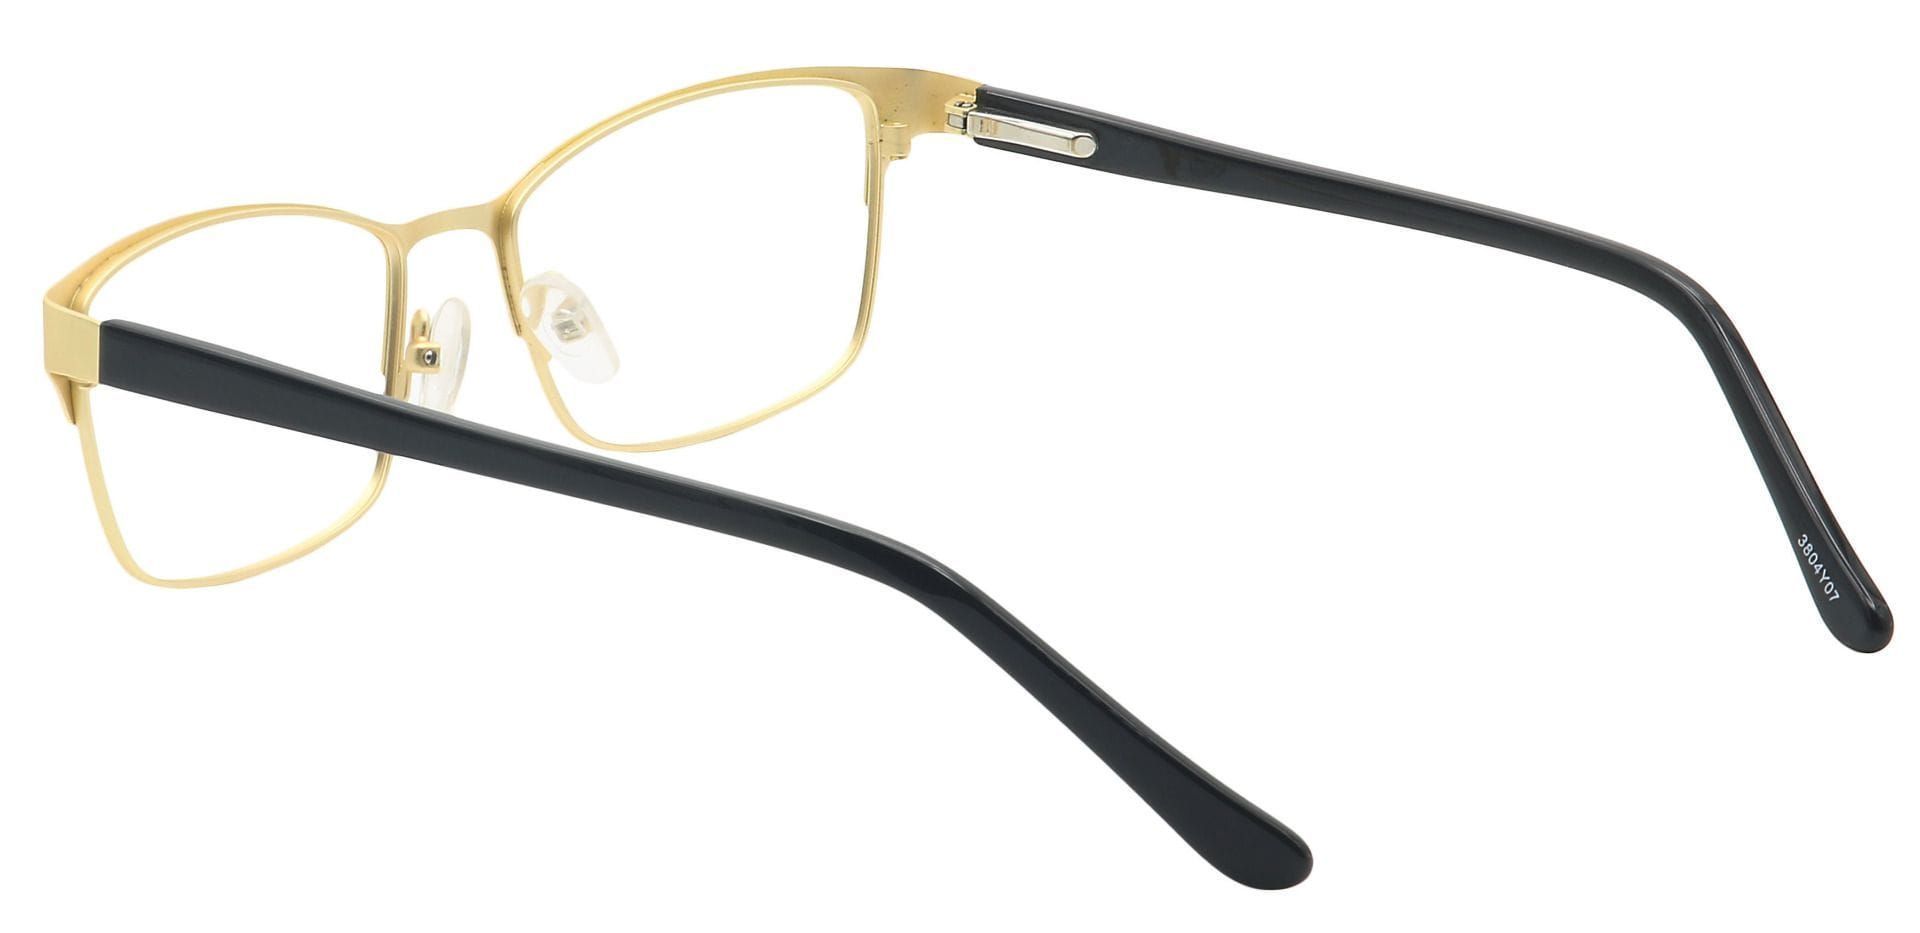 Tella Rectangle Non-Rx Glasses - Yellow